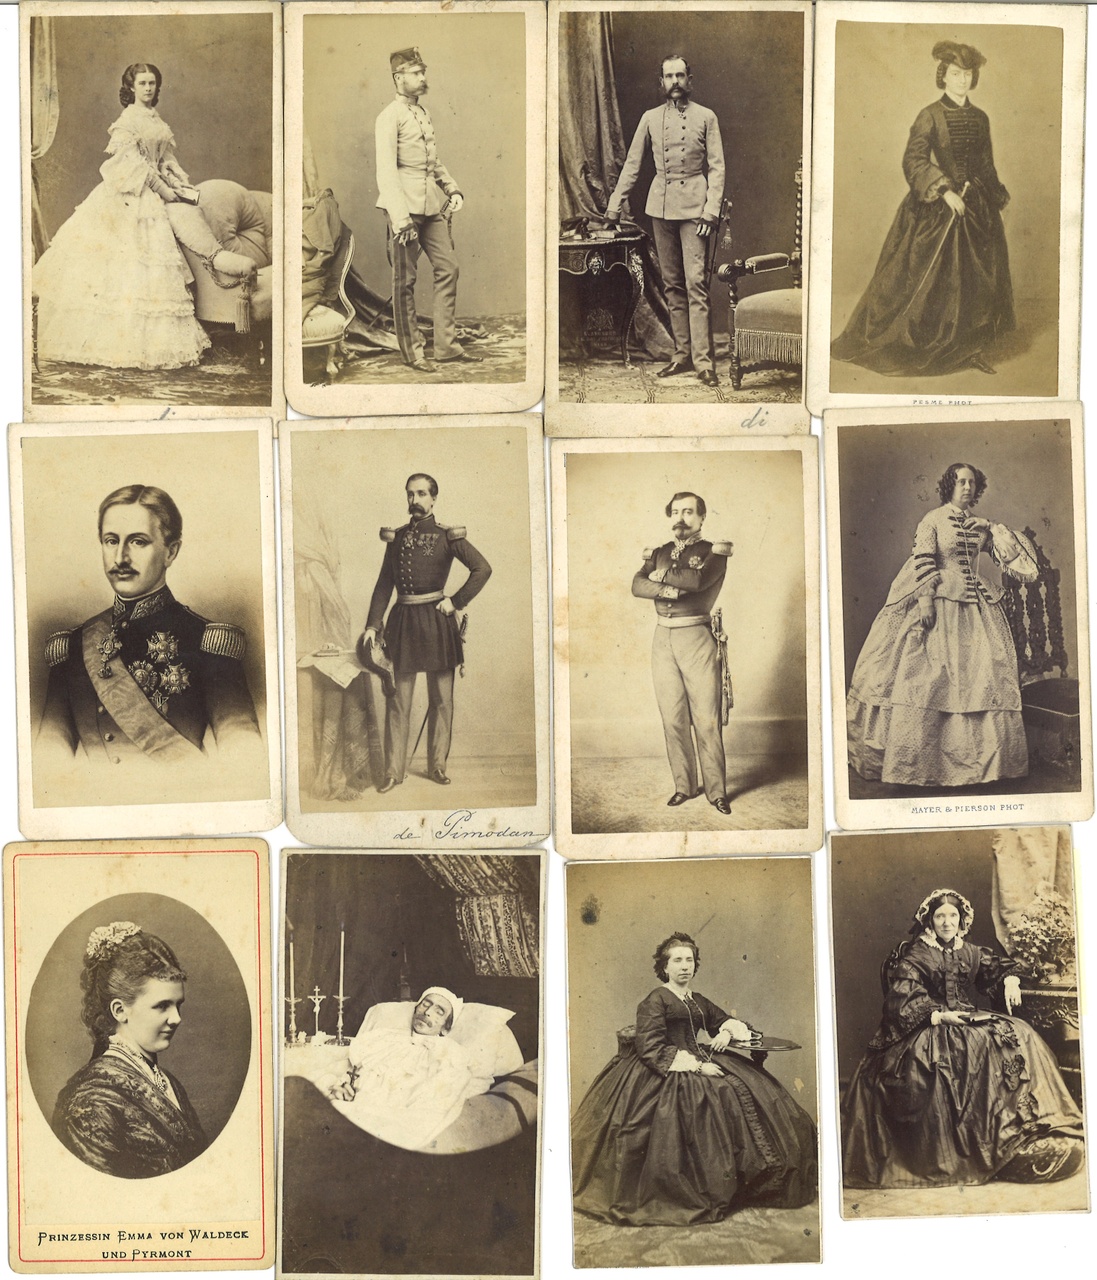 Verrzameling van 12 Portretfoto's (carte-de-visite) van koninklijke familie, adel